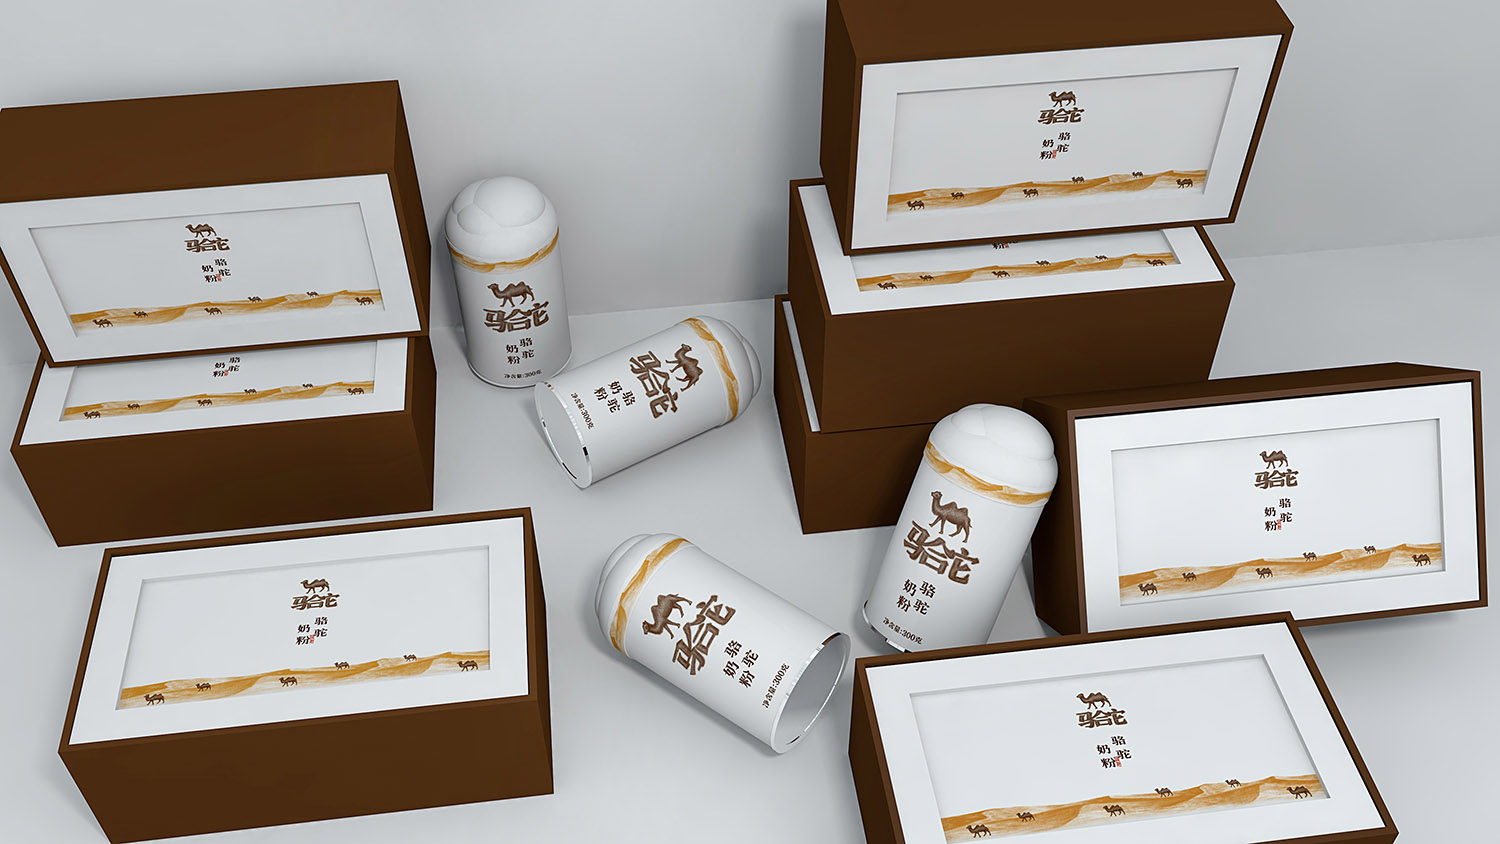 骆驼奶粉品牌包装设计